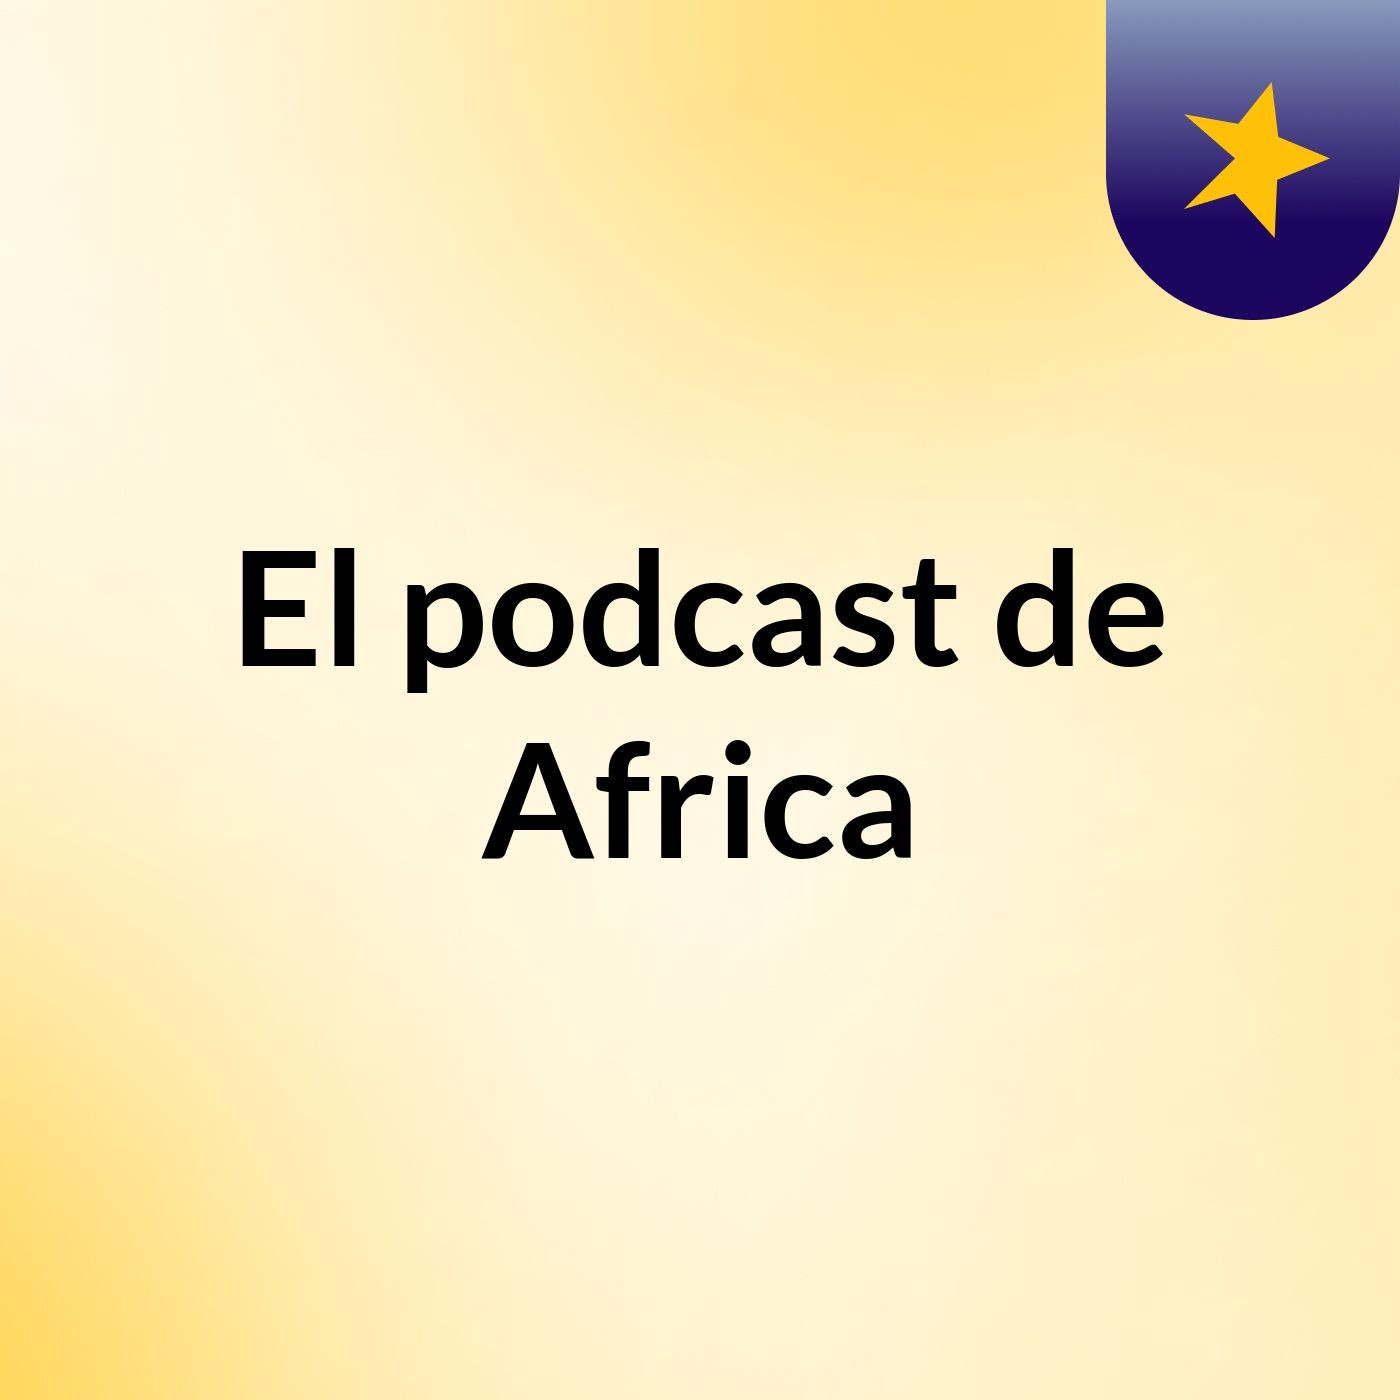 El podcast de Africa